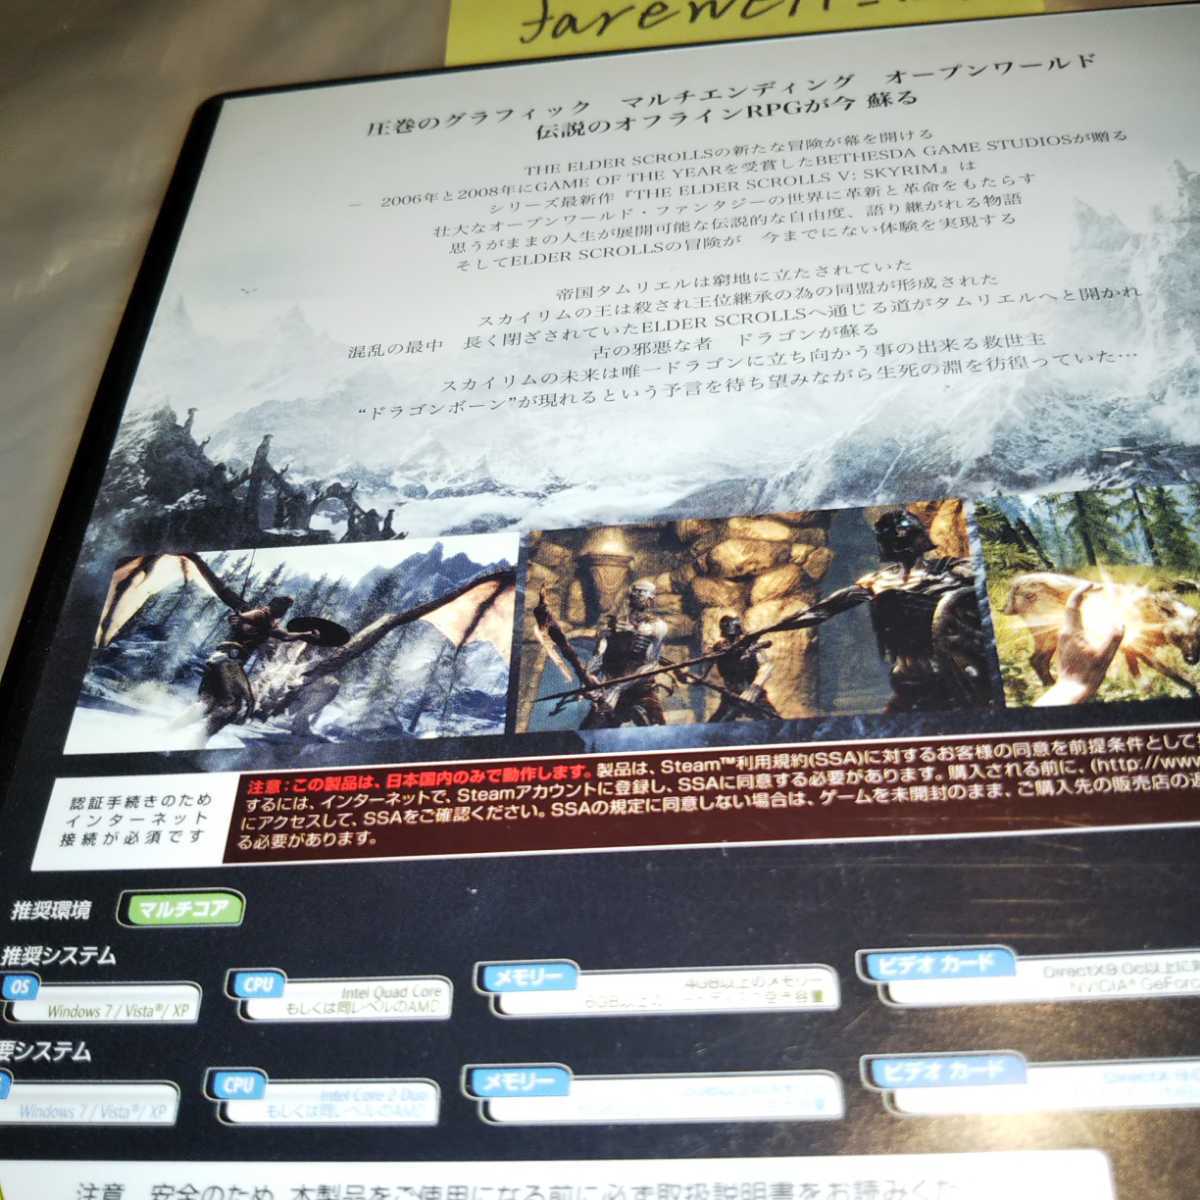 The Elder Scrolls V : Skyrimji* L da-* scroll z* five * Sky rim DVD-ROM for Windows 2011 year version 5